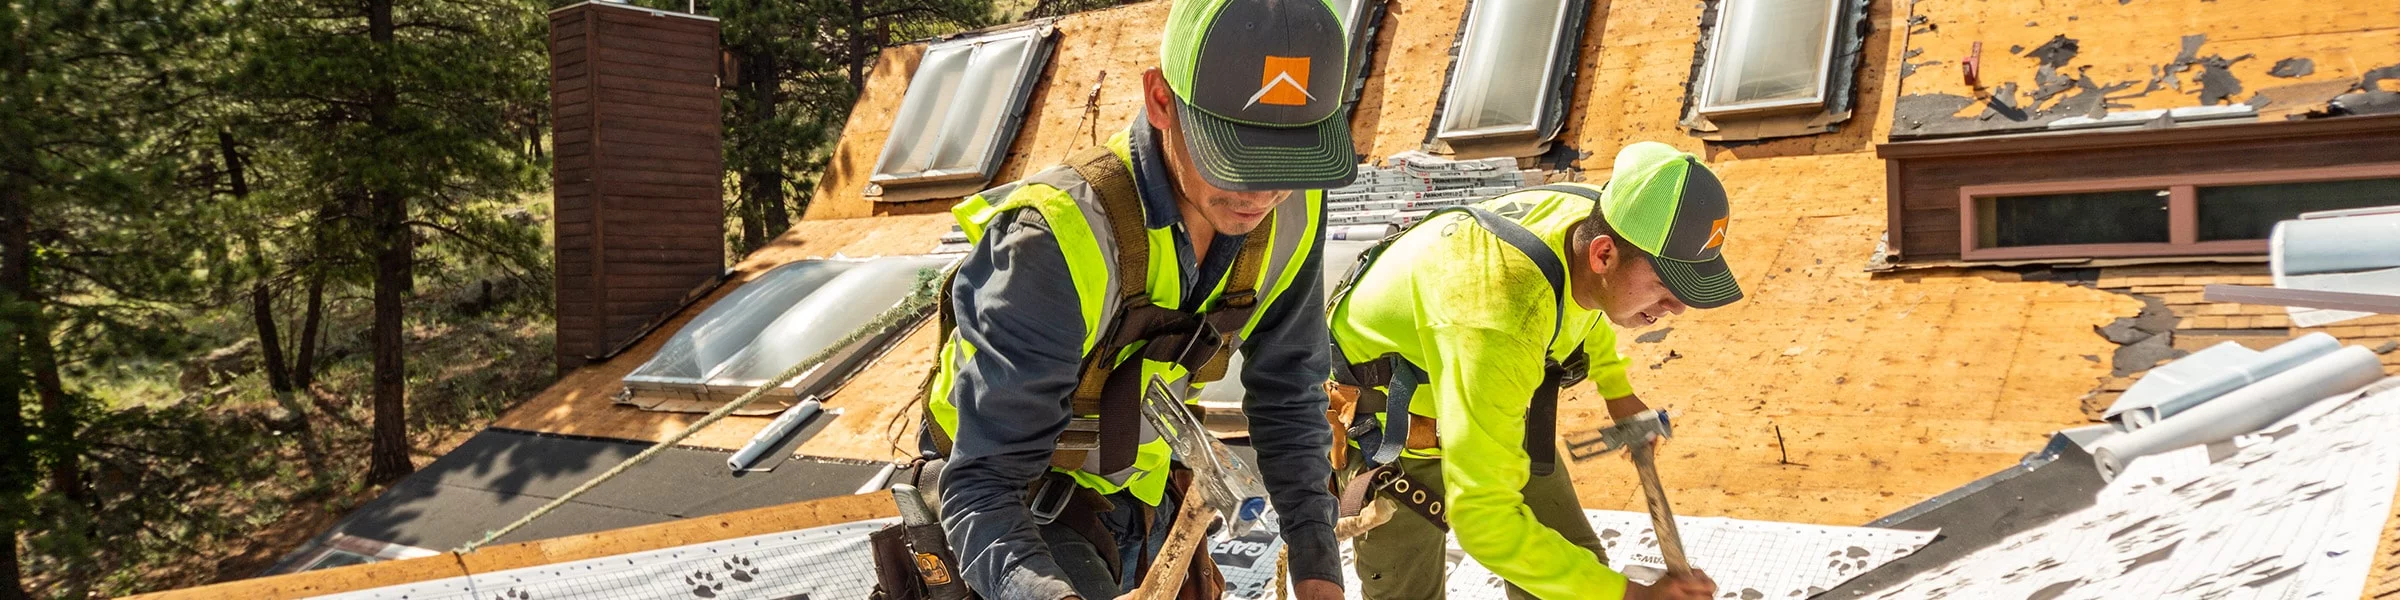 WestPro Contractors work on a new roof